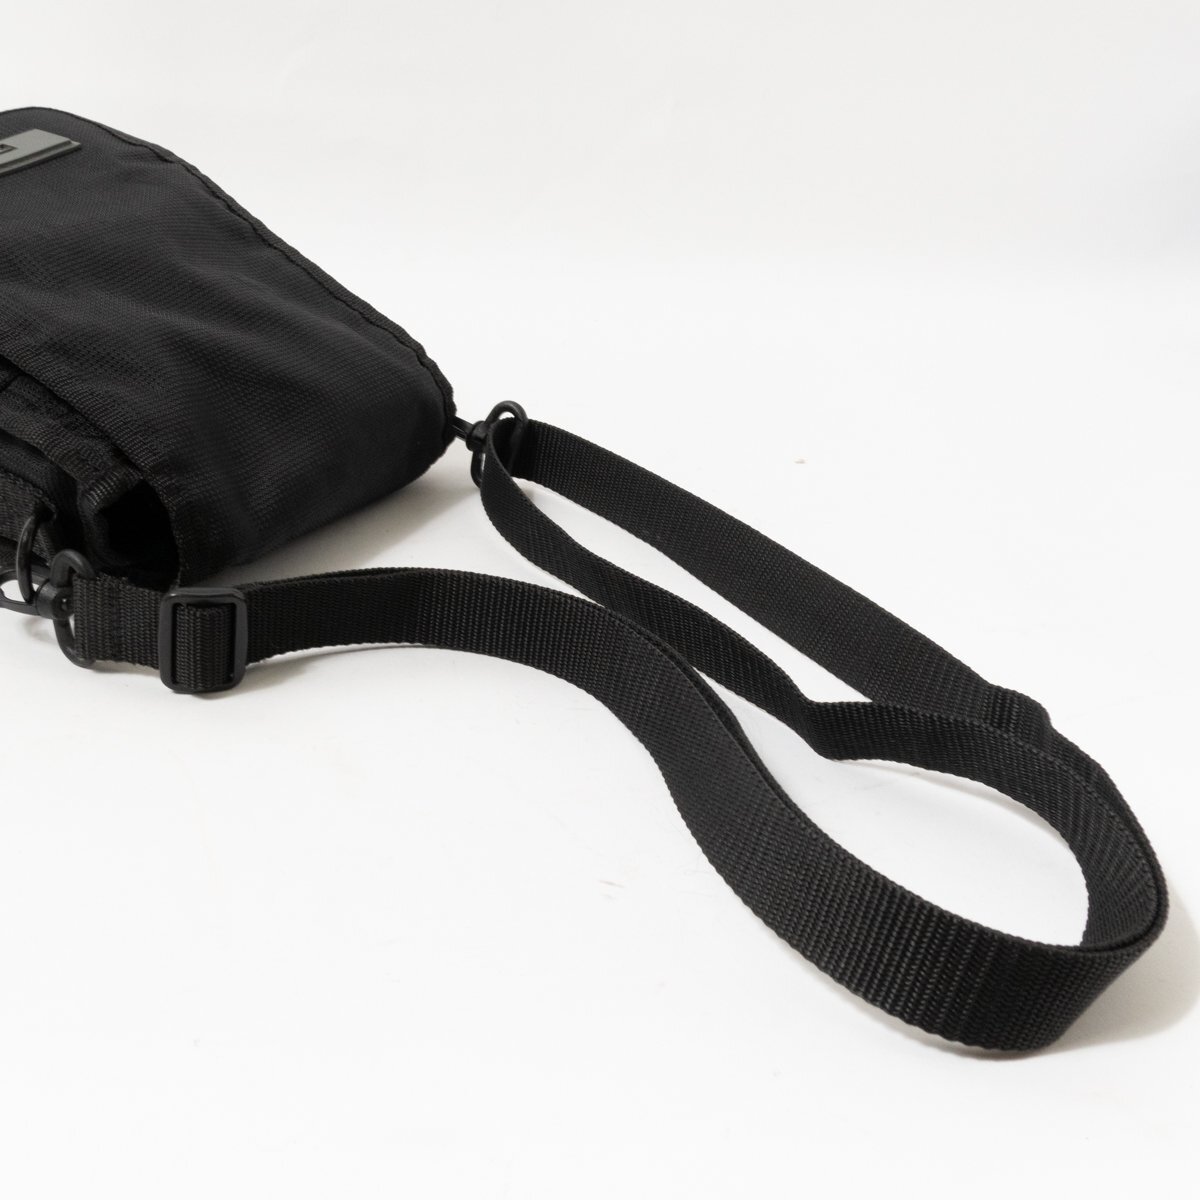 DIESEL ディーゼル ショルダーバッグ ブラック 黒 グレー ナイロン メンズ 斜め掛け シンプル 小さめ 収納多数 カジュアル bag 鞄 かばん_画像4